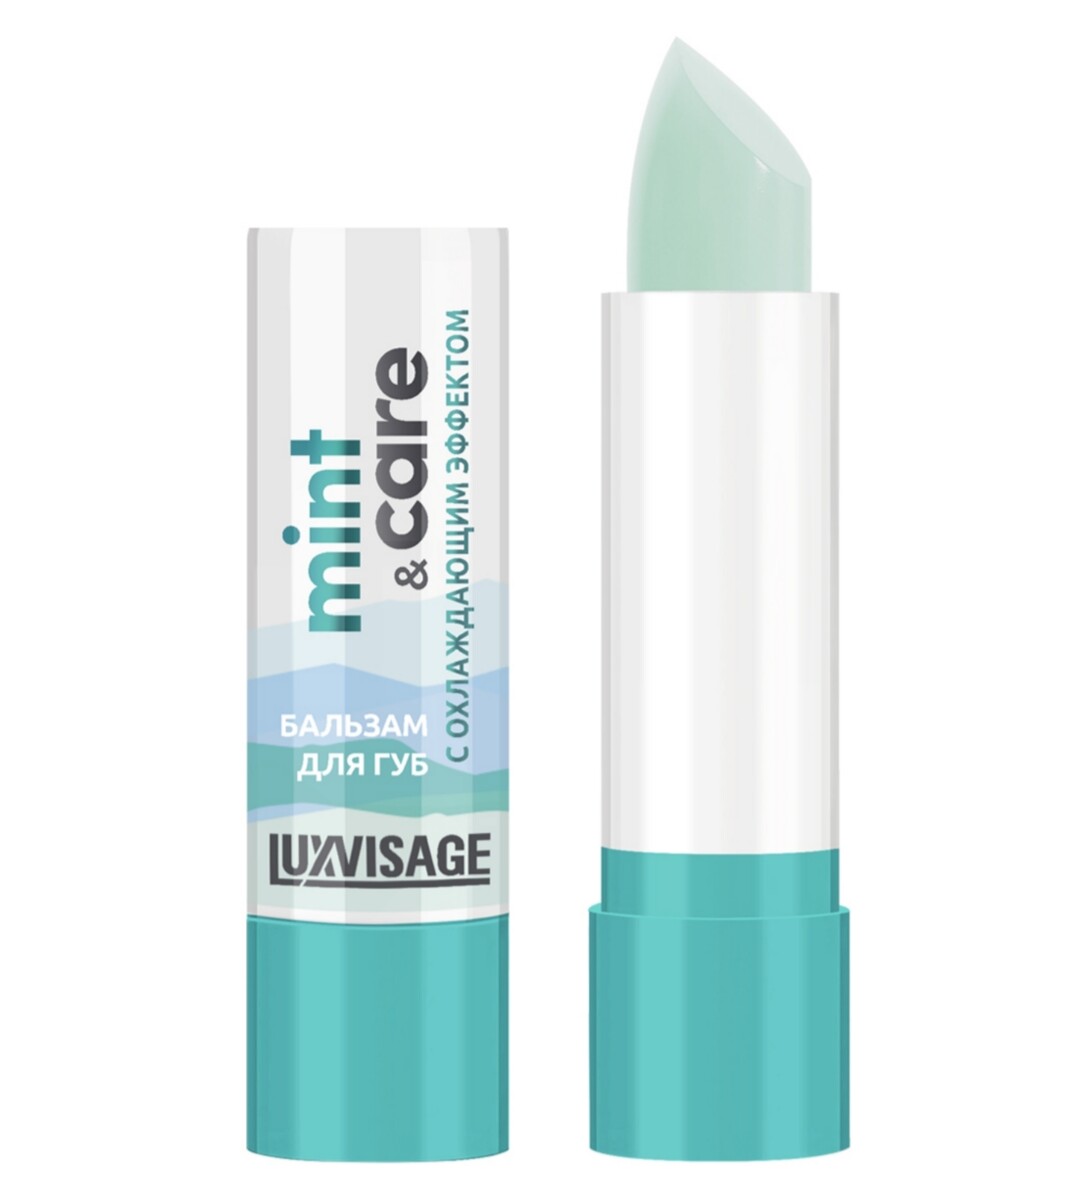 Luxvisage бальзам для губ luxvisage mint & care с охлаждающим эффектом 3,9г Lux Visage